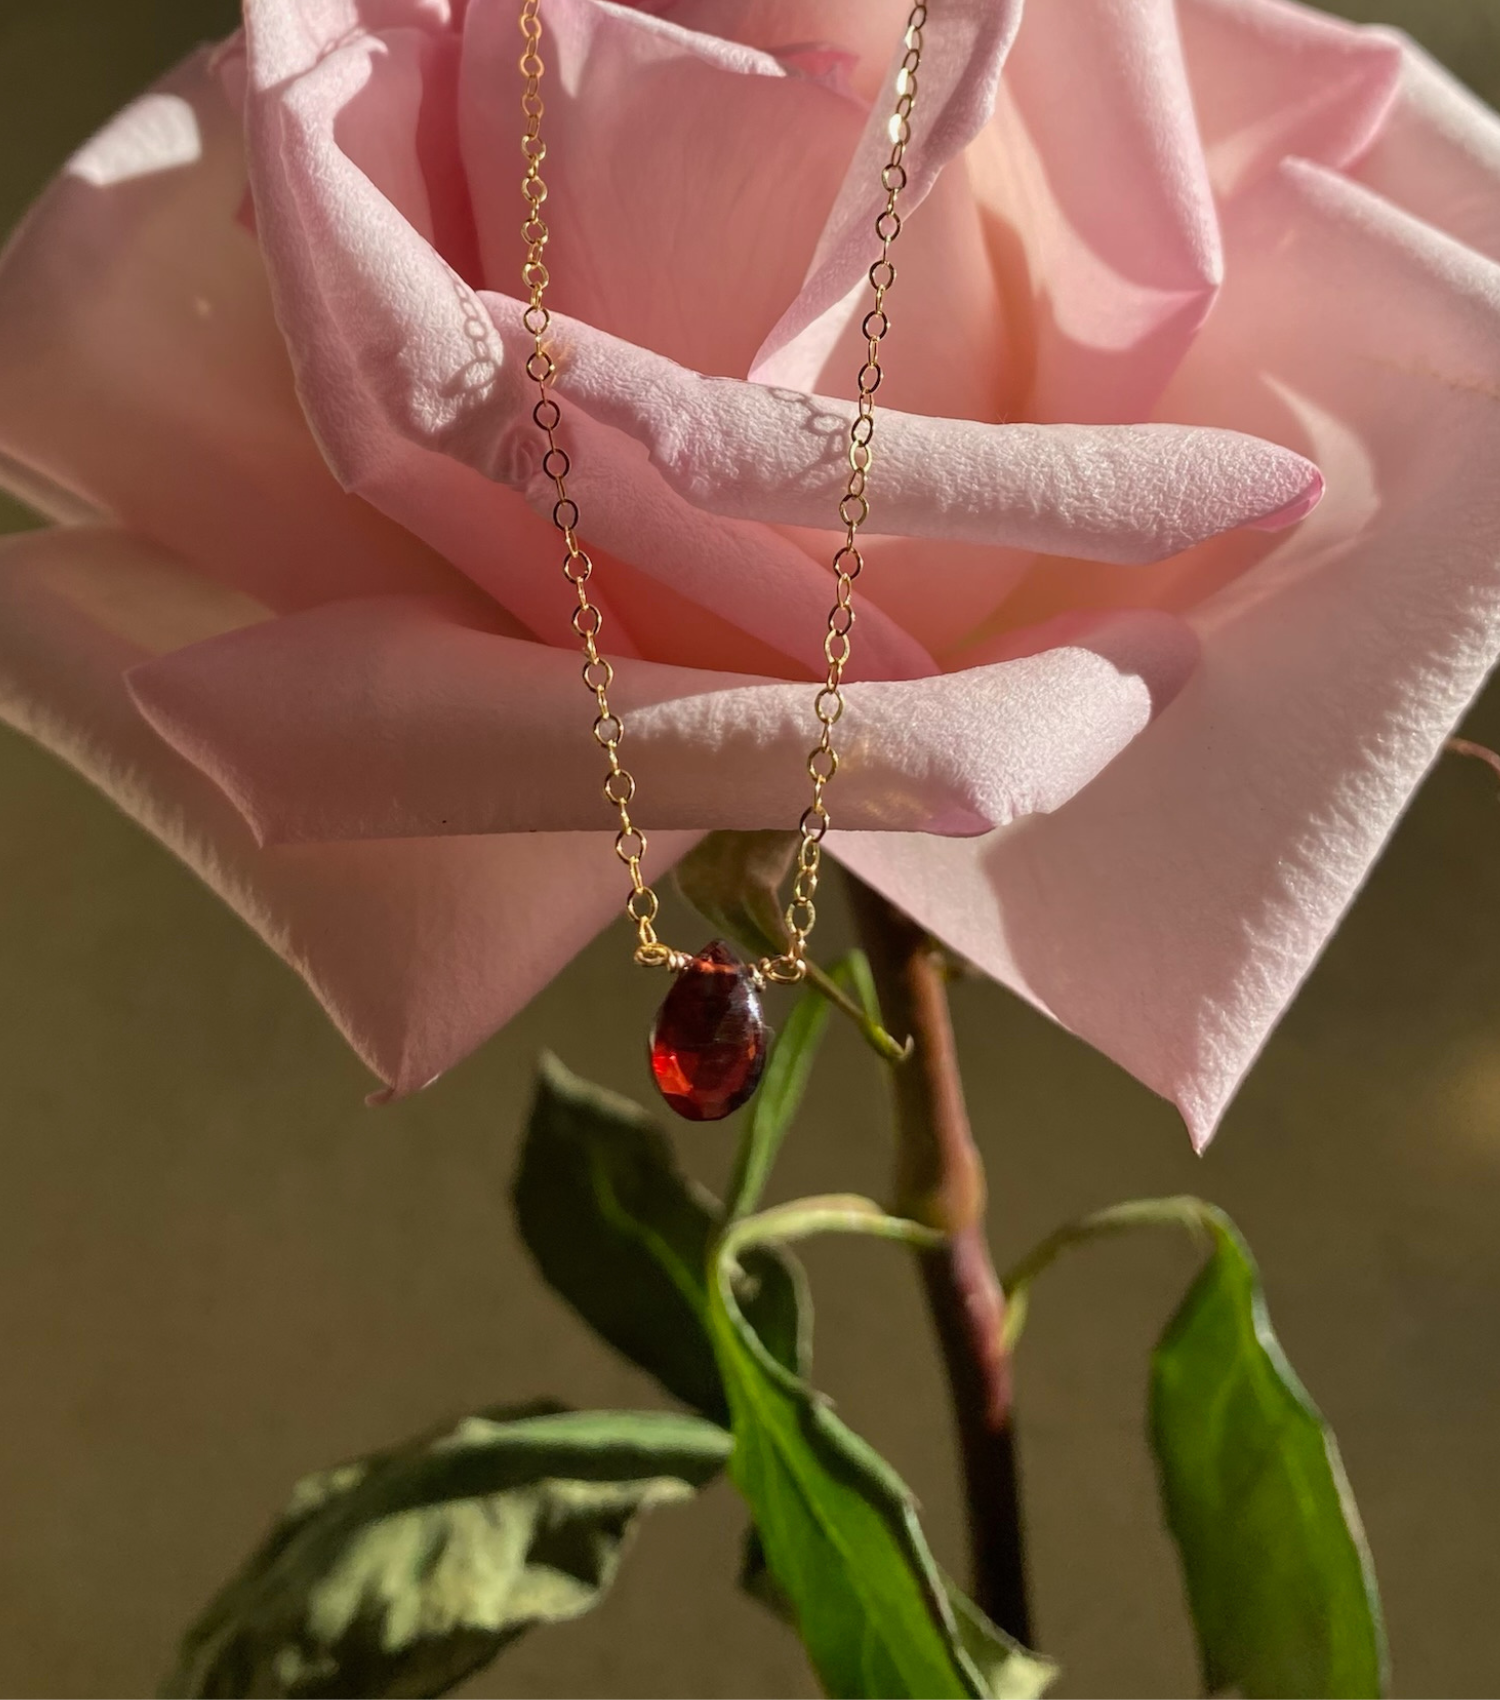 Gem Pendant Necklace (10mm) - Garnet Necklaces TARBAY   